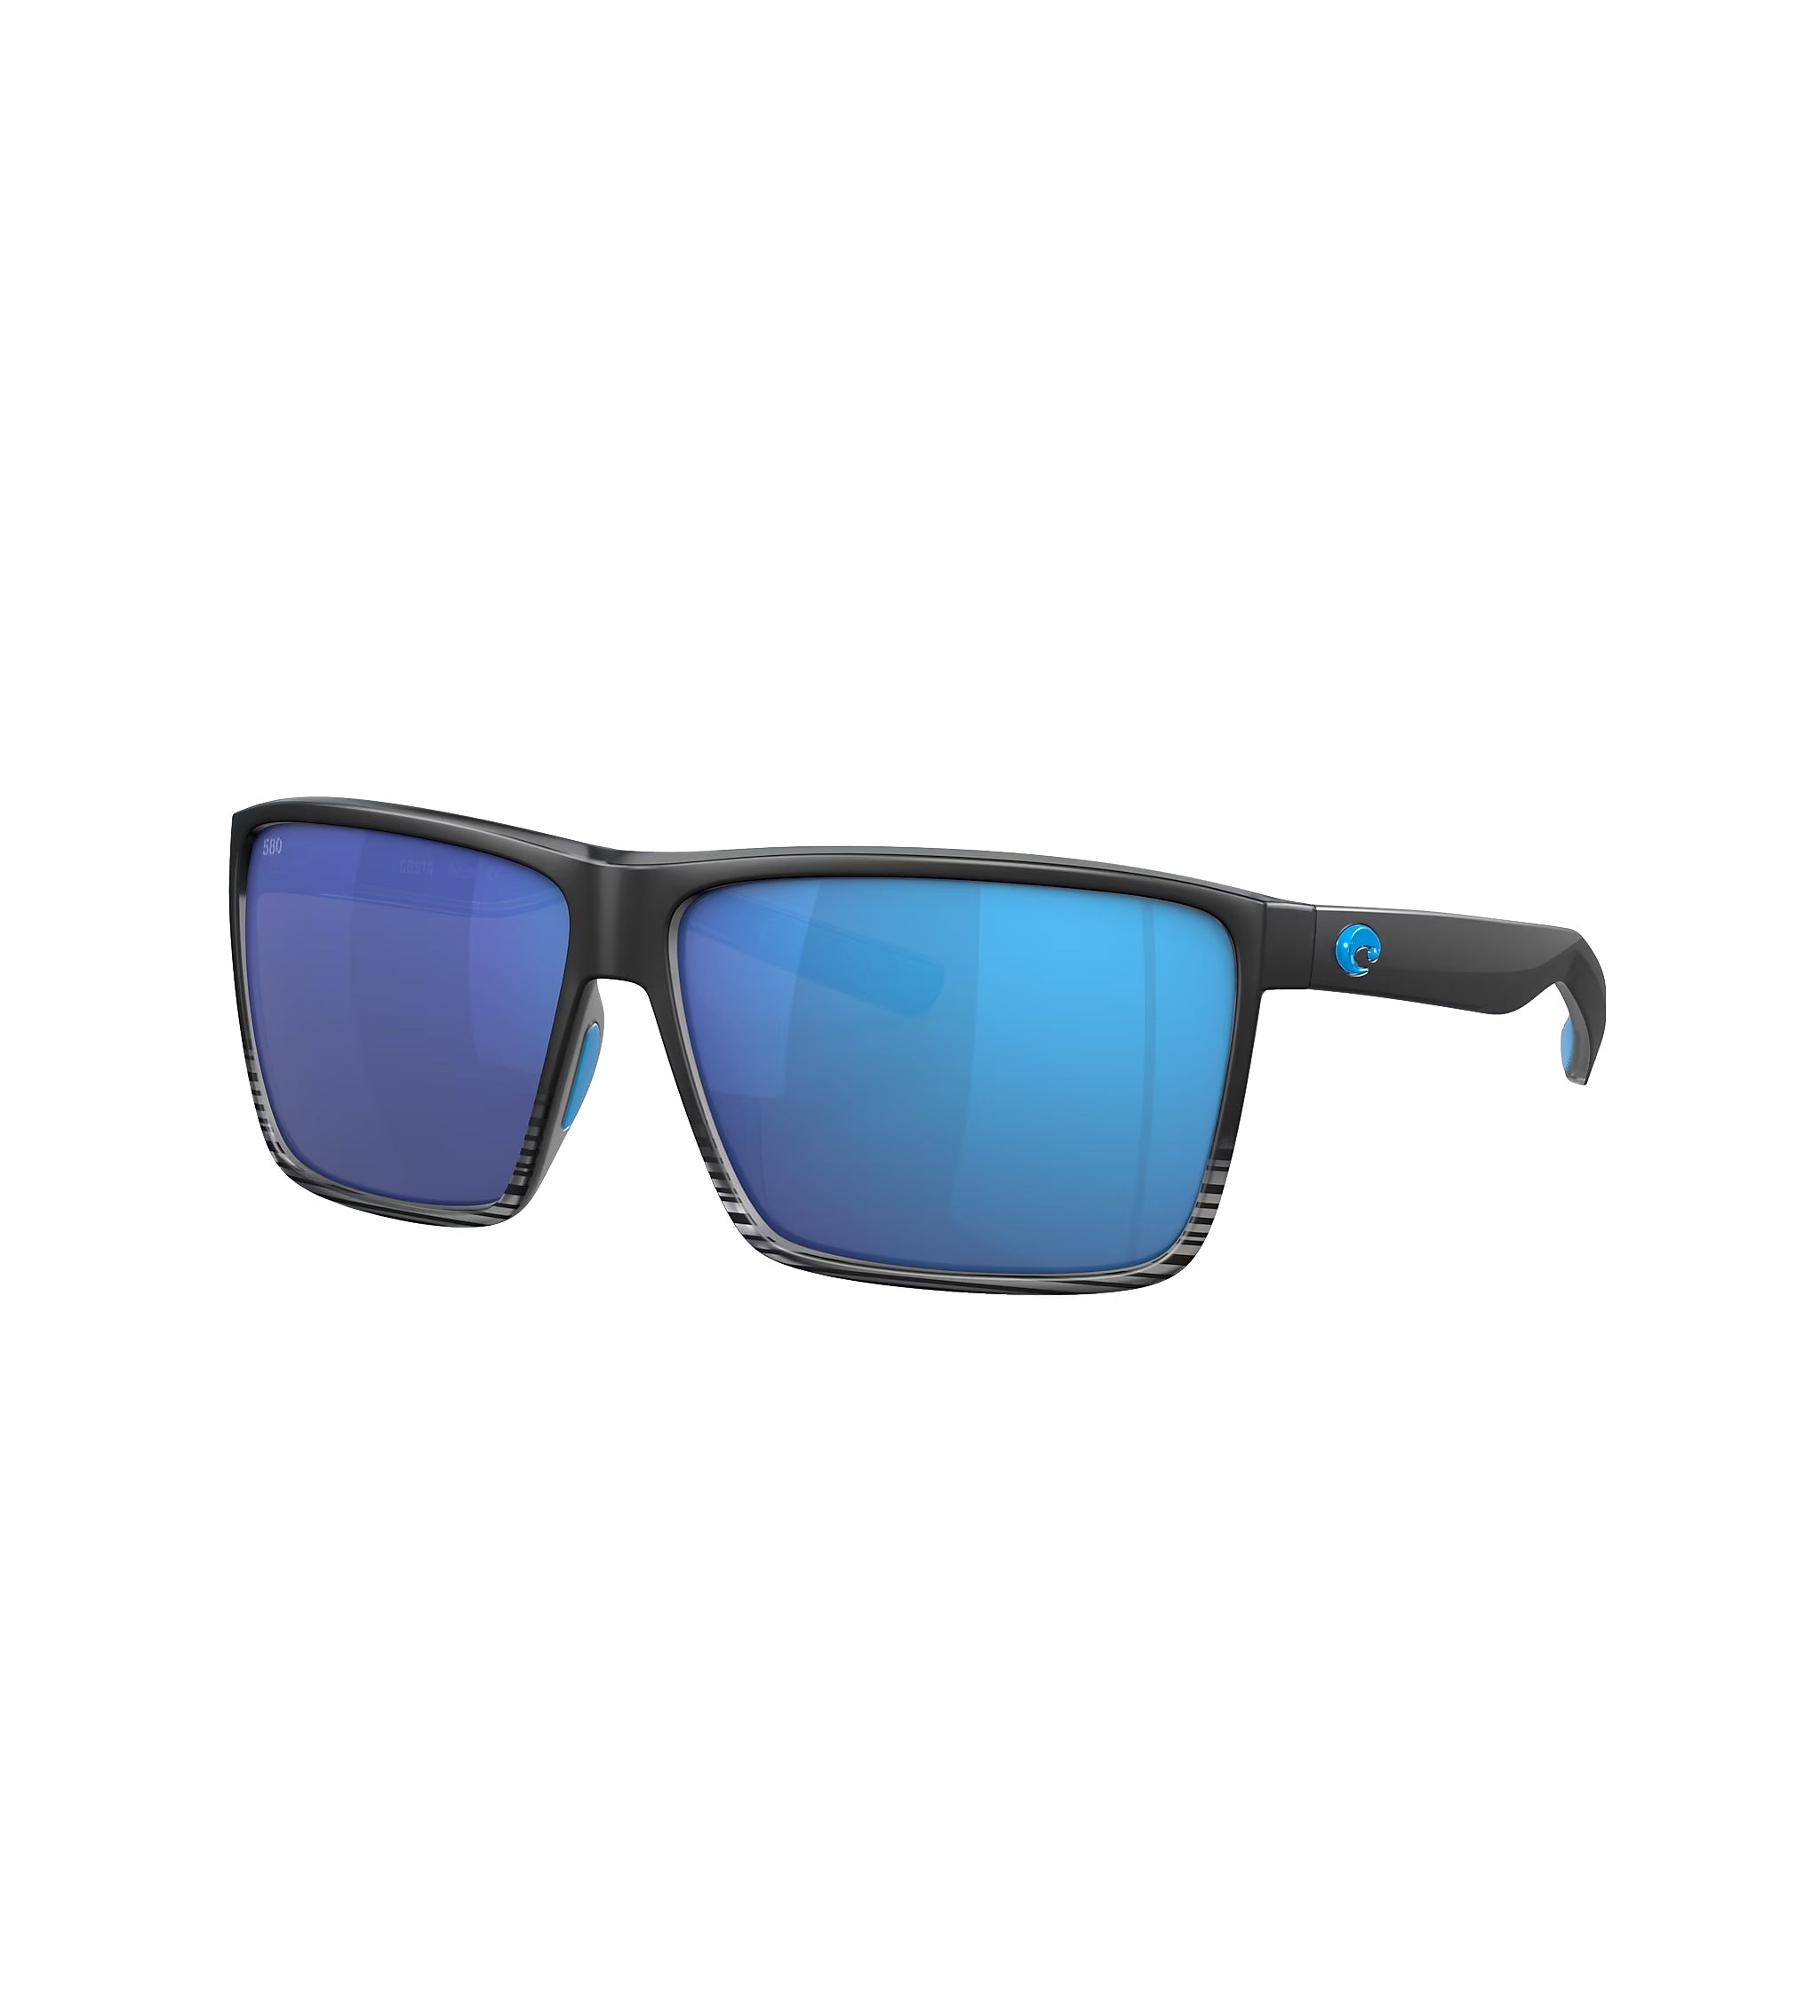 Costa Del Mar Rincon Sunglasses MatteSmokeCrystal BlueMirror 580G